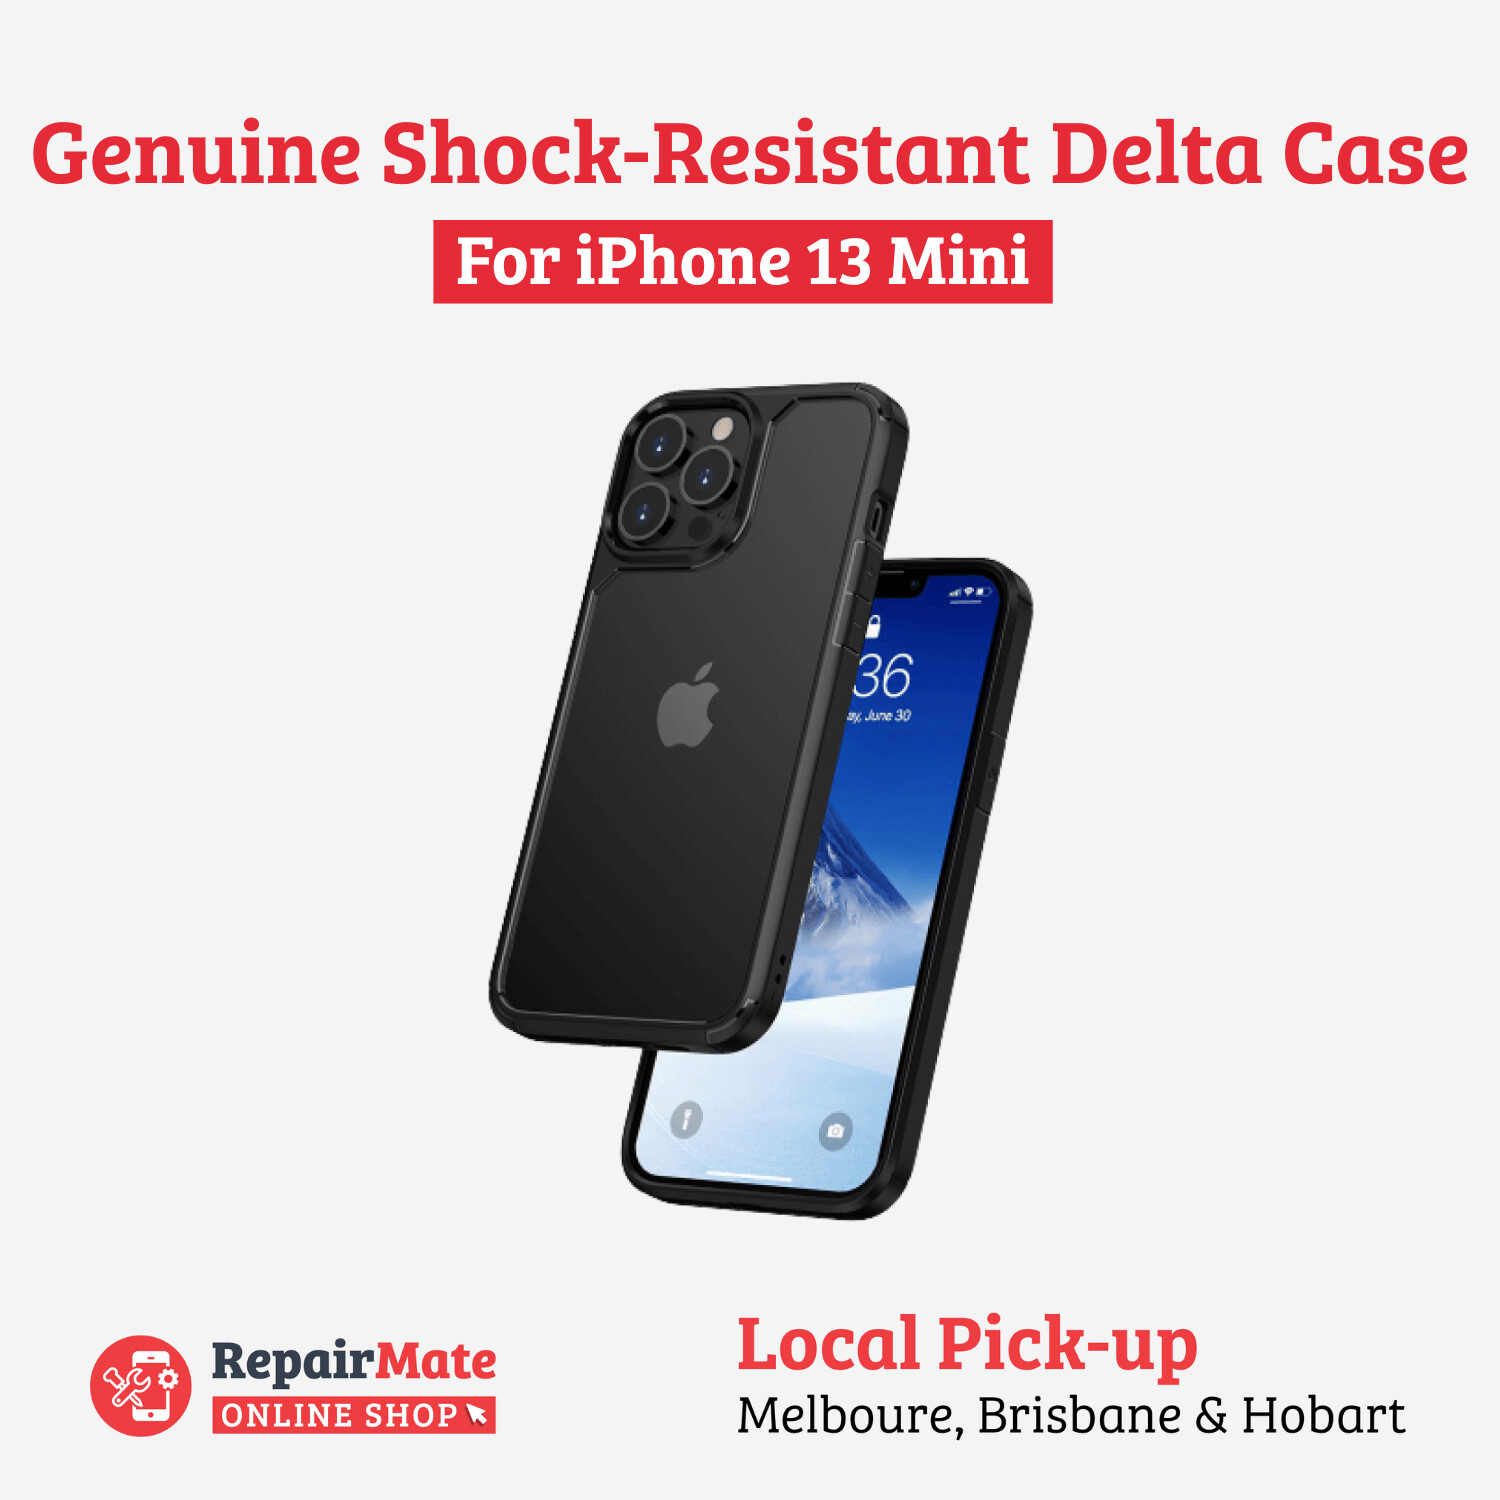 iPhone 13 Mini Genuine Shock-Resistant Delta Case